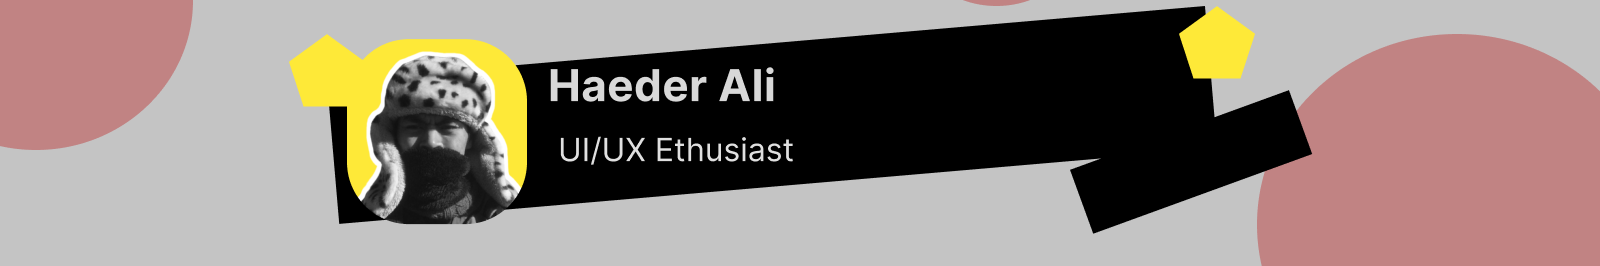 Haeder Ali profil başlığı